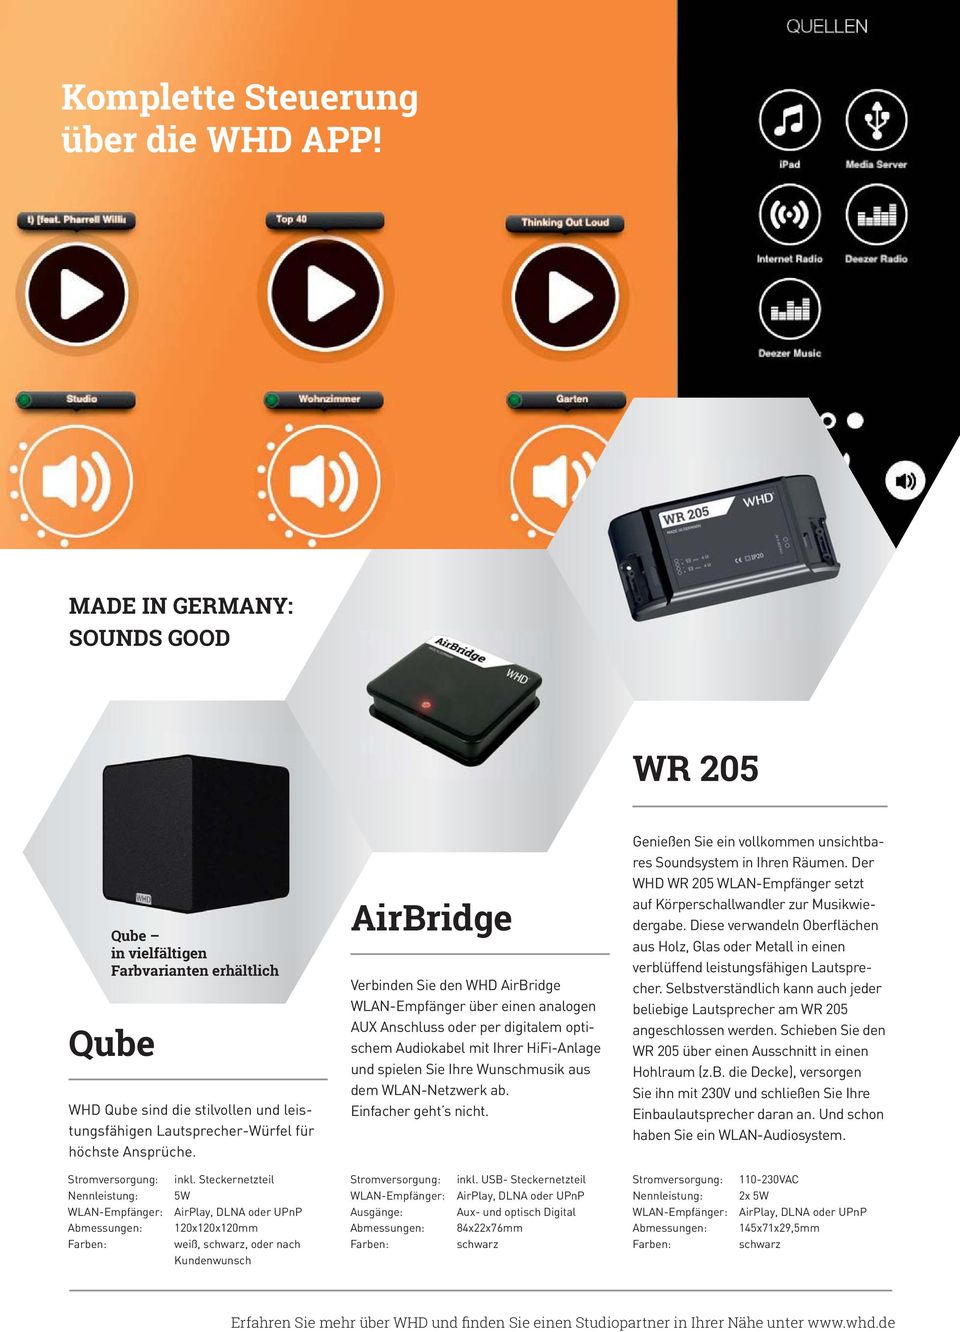 AirBridge Verbinden Sie den WHD AirBridge WLAN-Empfänger über einen analogen AUX Anschluss oder per digitalem optischem Audiokabel mit Ihrer HiFi-Anlage und spielen Sie Ihre Wunschmusik aus dem